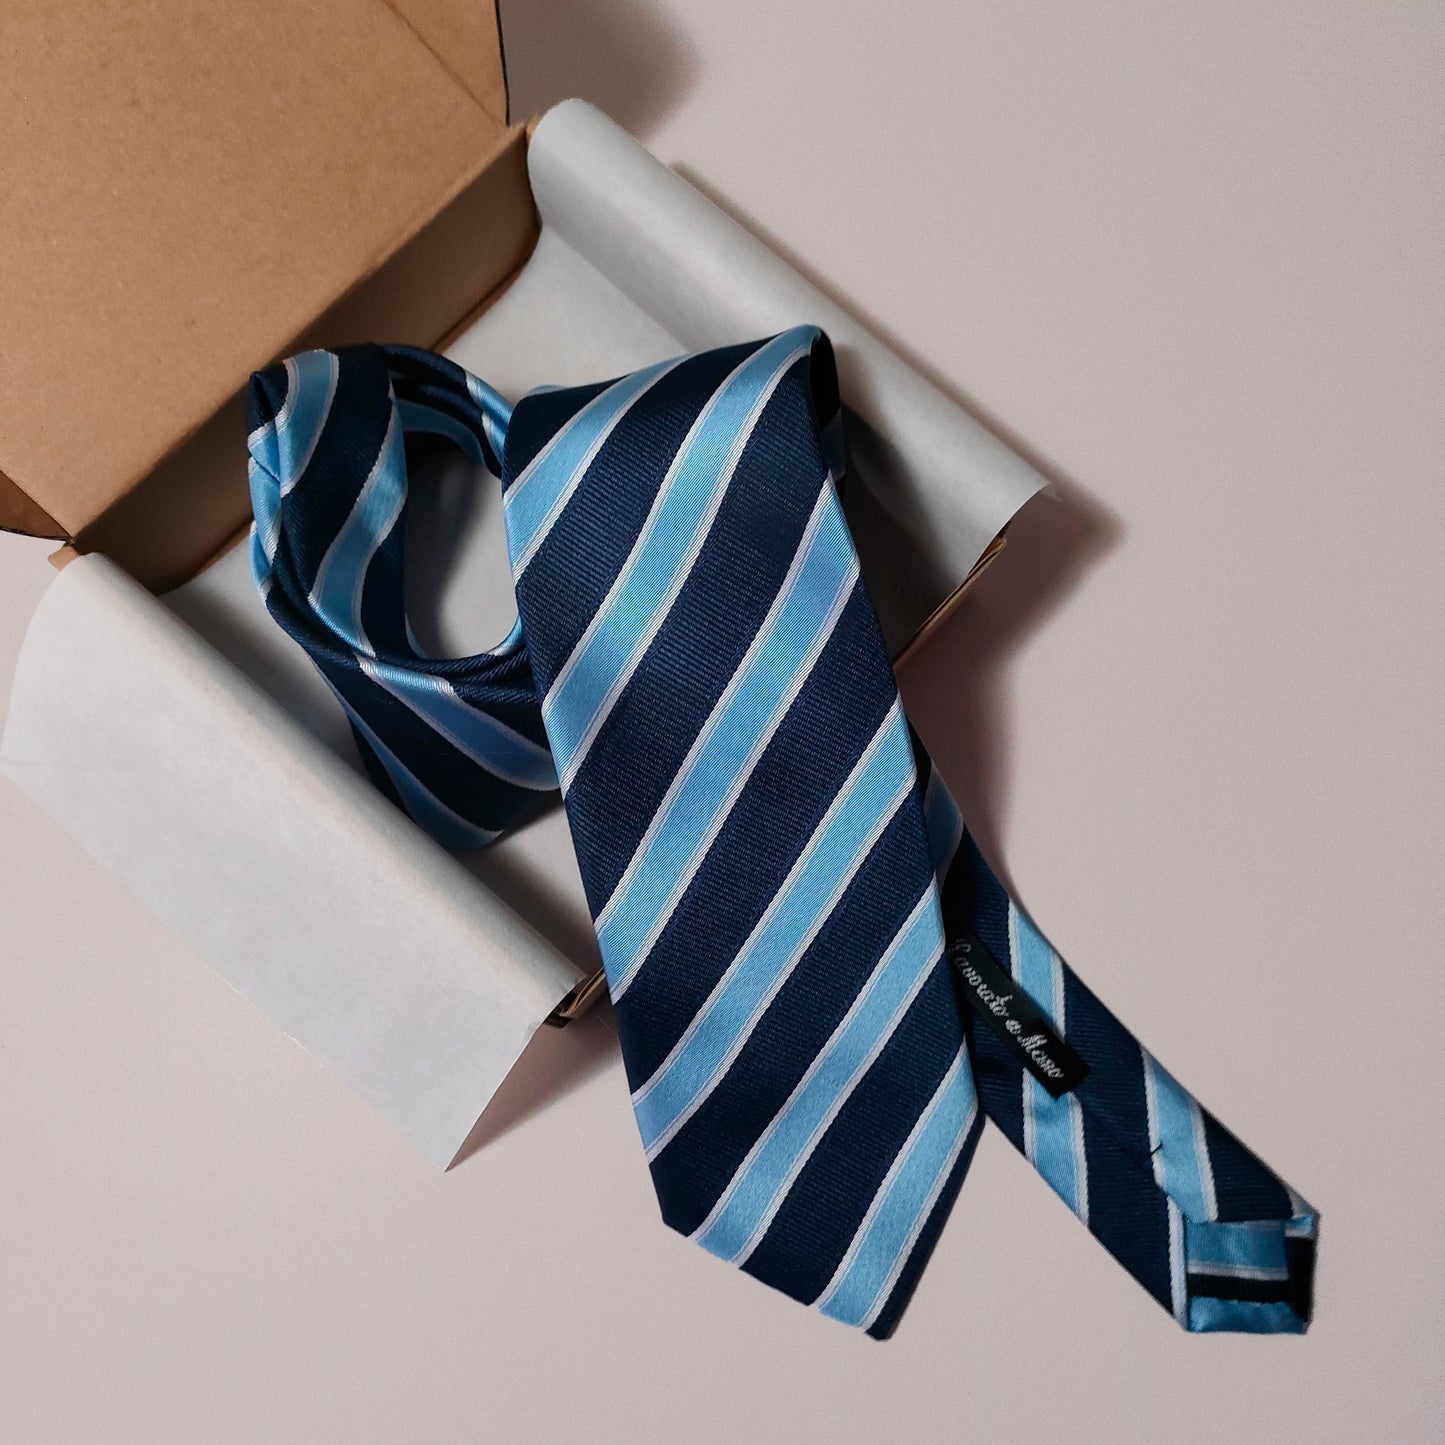 Cravatta Regimental Blu con Righe Azzurro e Bianco Classica Elegante Casual